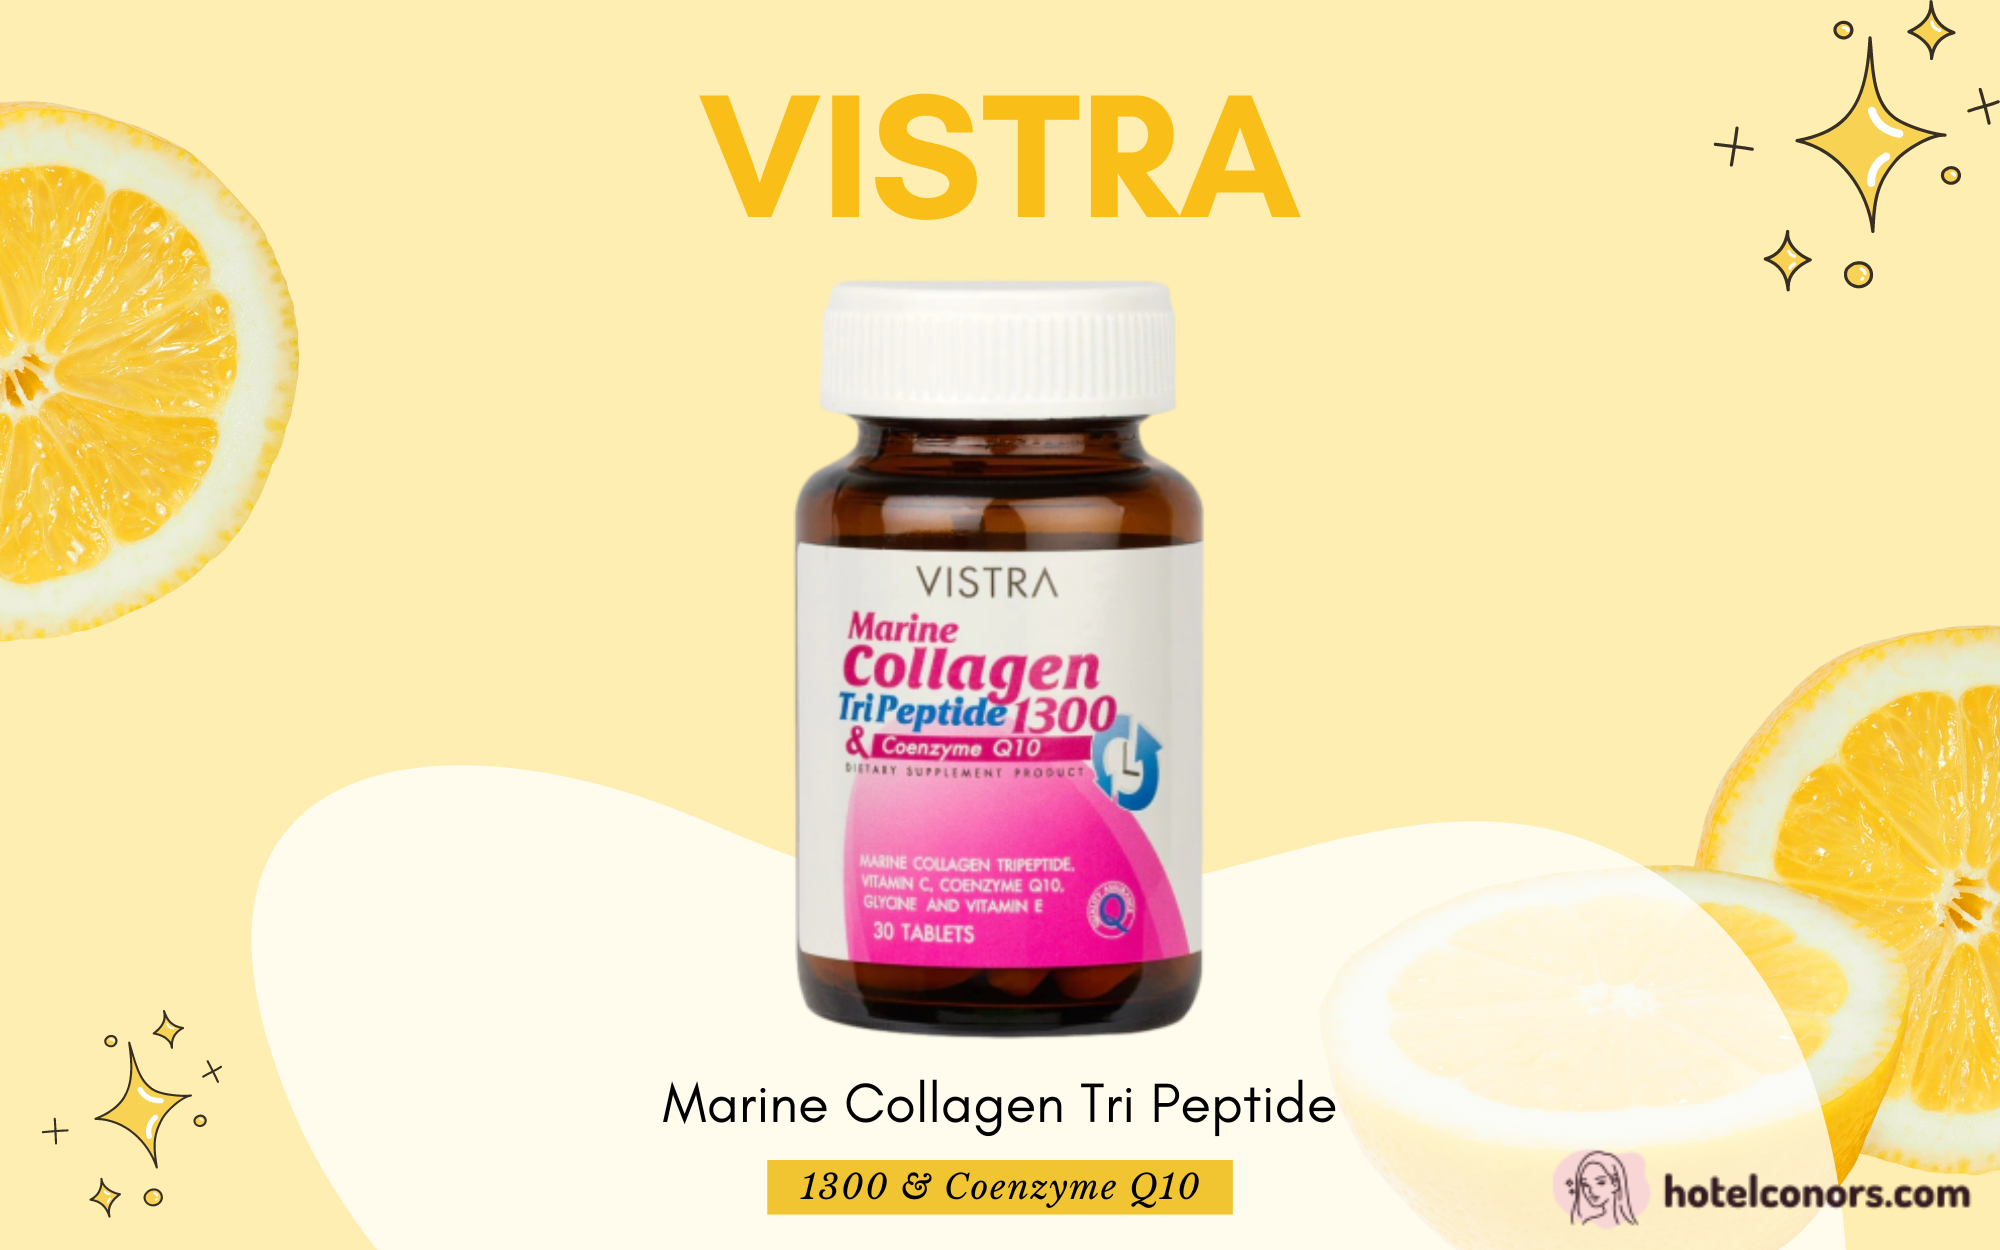 รีวิว Vistra Marine Collagen วิตามินช่วยผิวแข็งแรงจากภายใน